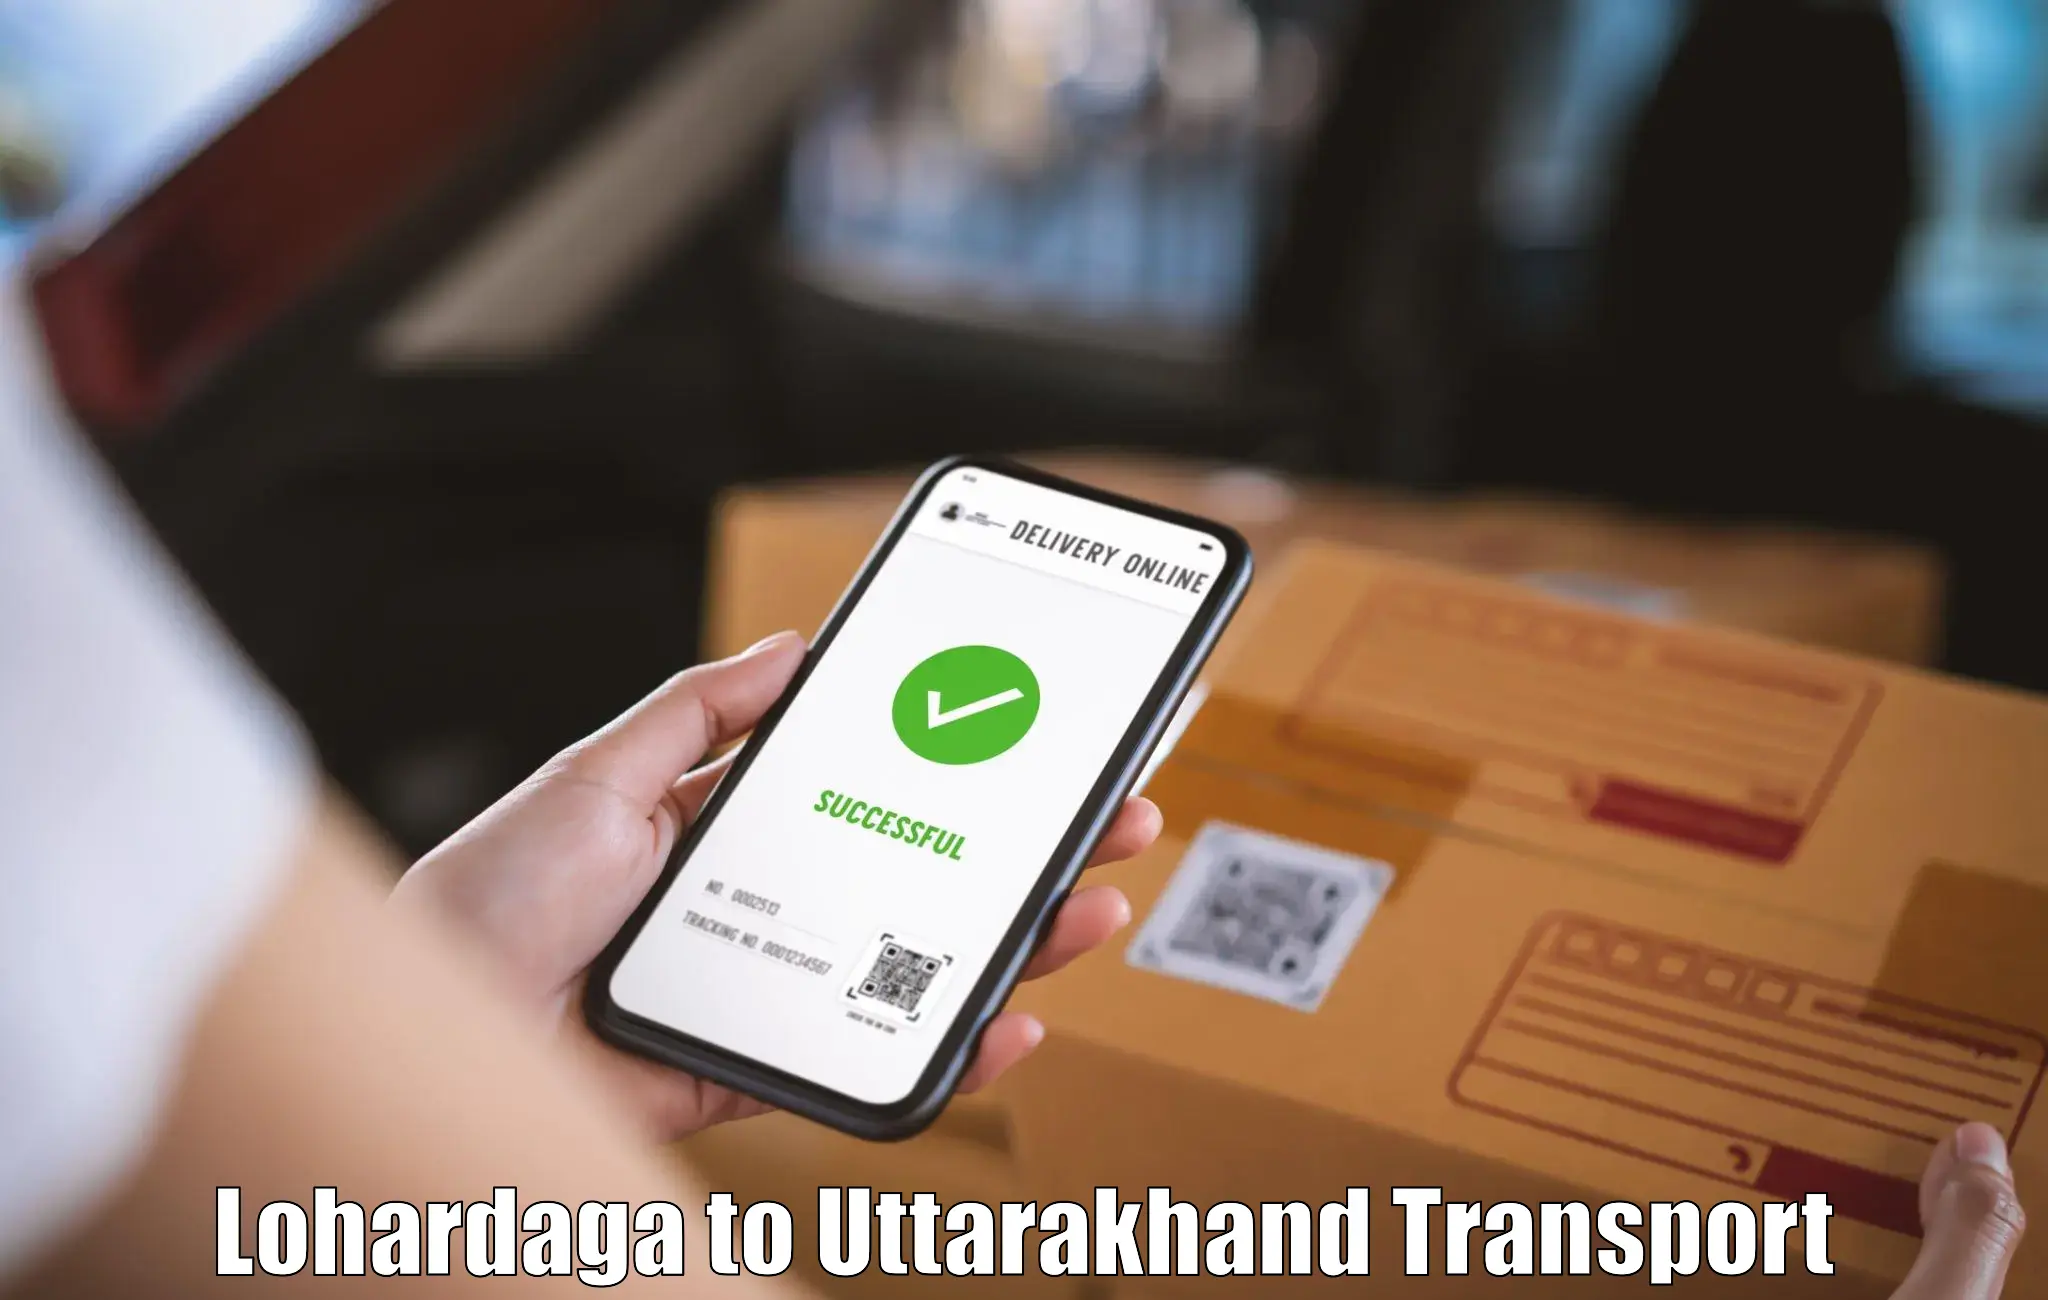 Nationwide transport services Lohardaga to Uttarakhand